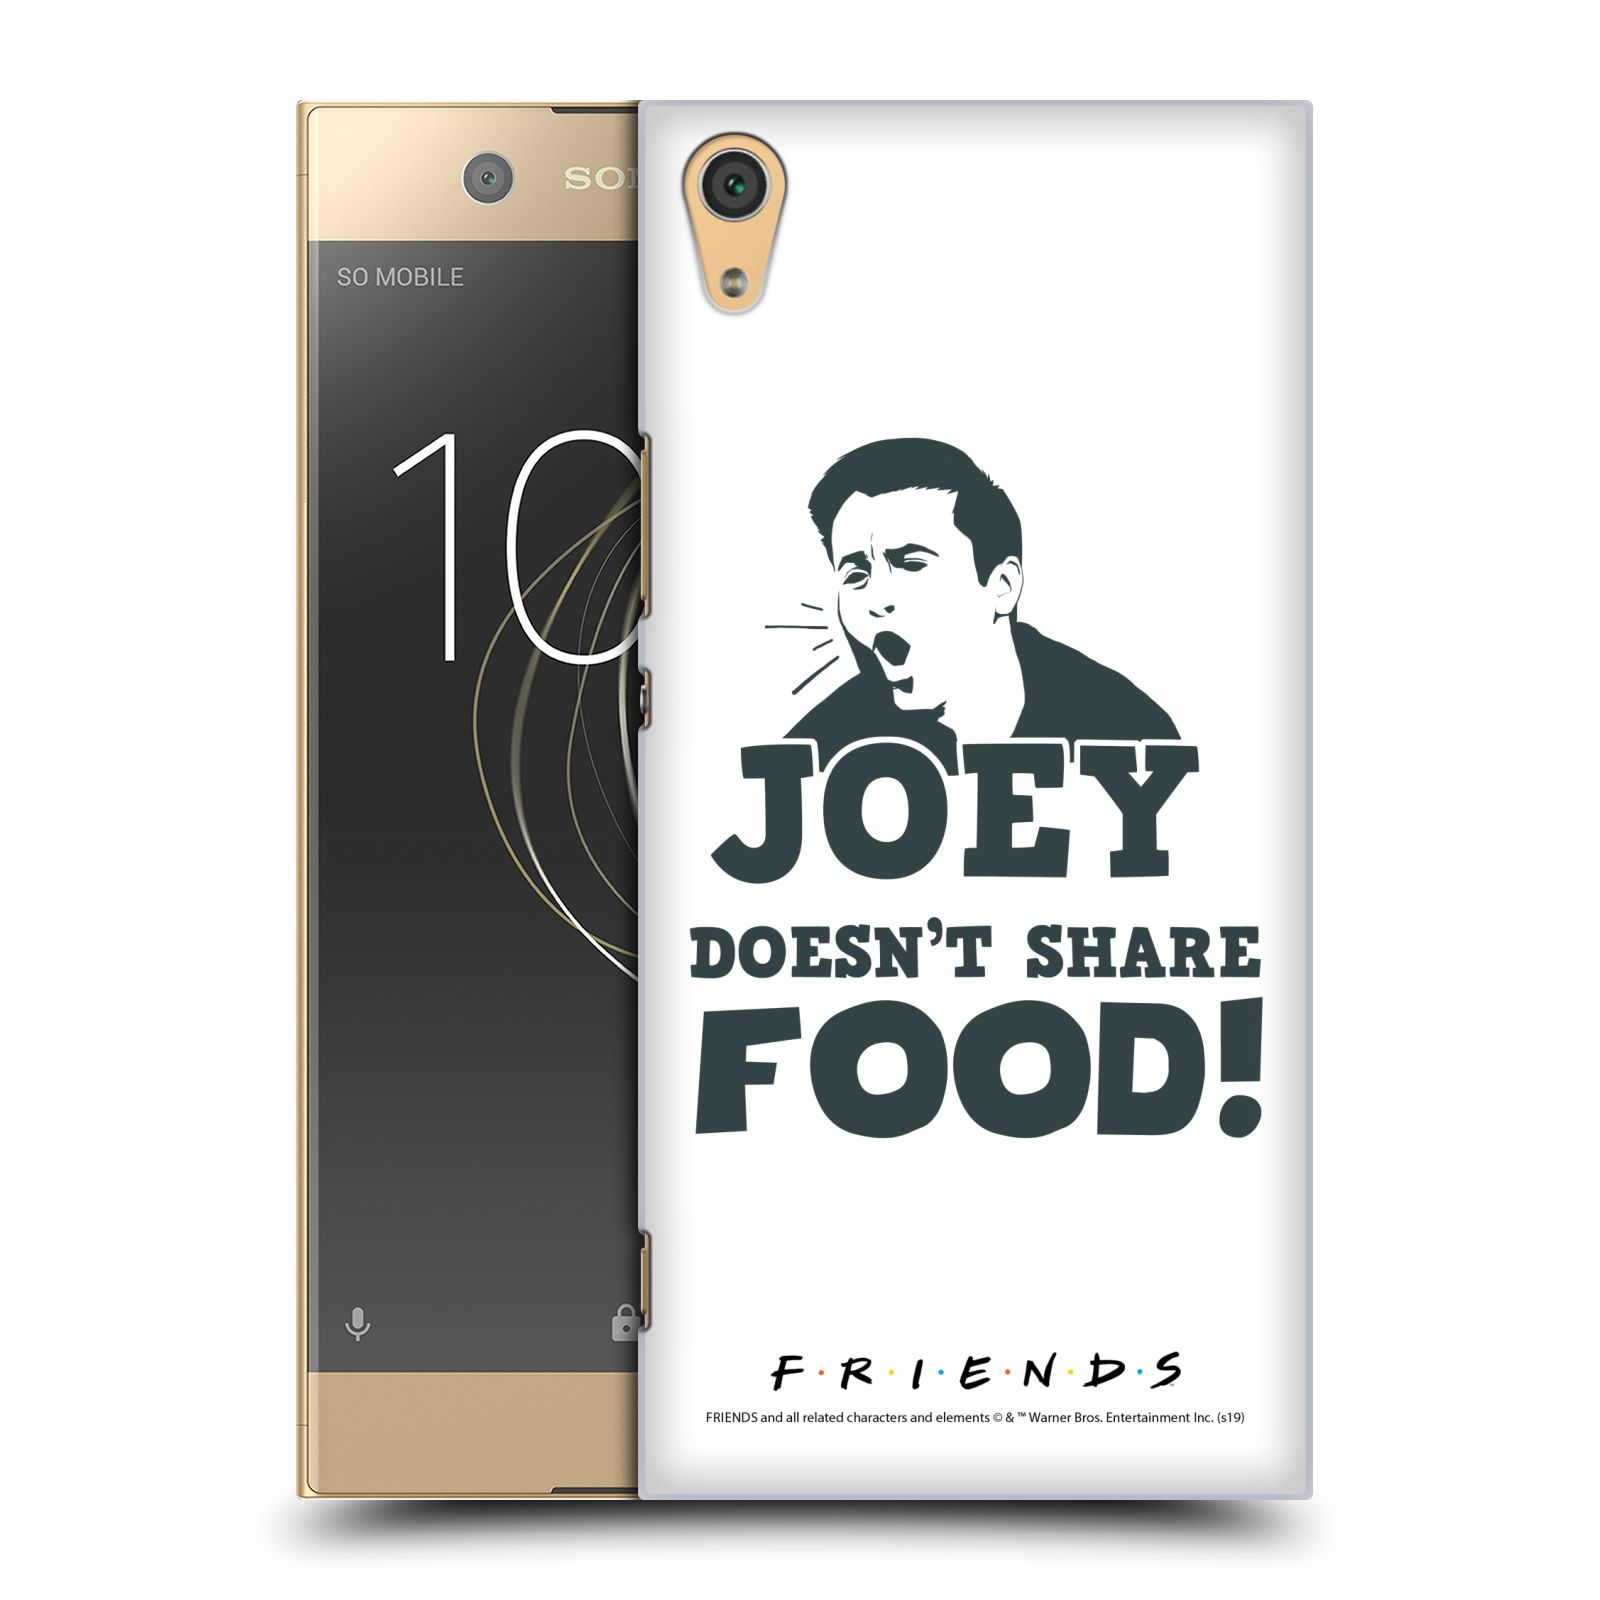 Pouzdro na mobil Sony Xperia XA1 ULTRA - HEAD CASE - Seriál Přátelé - Joey se o jídlo nedělí